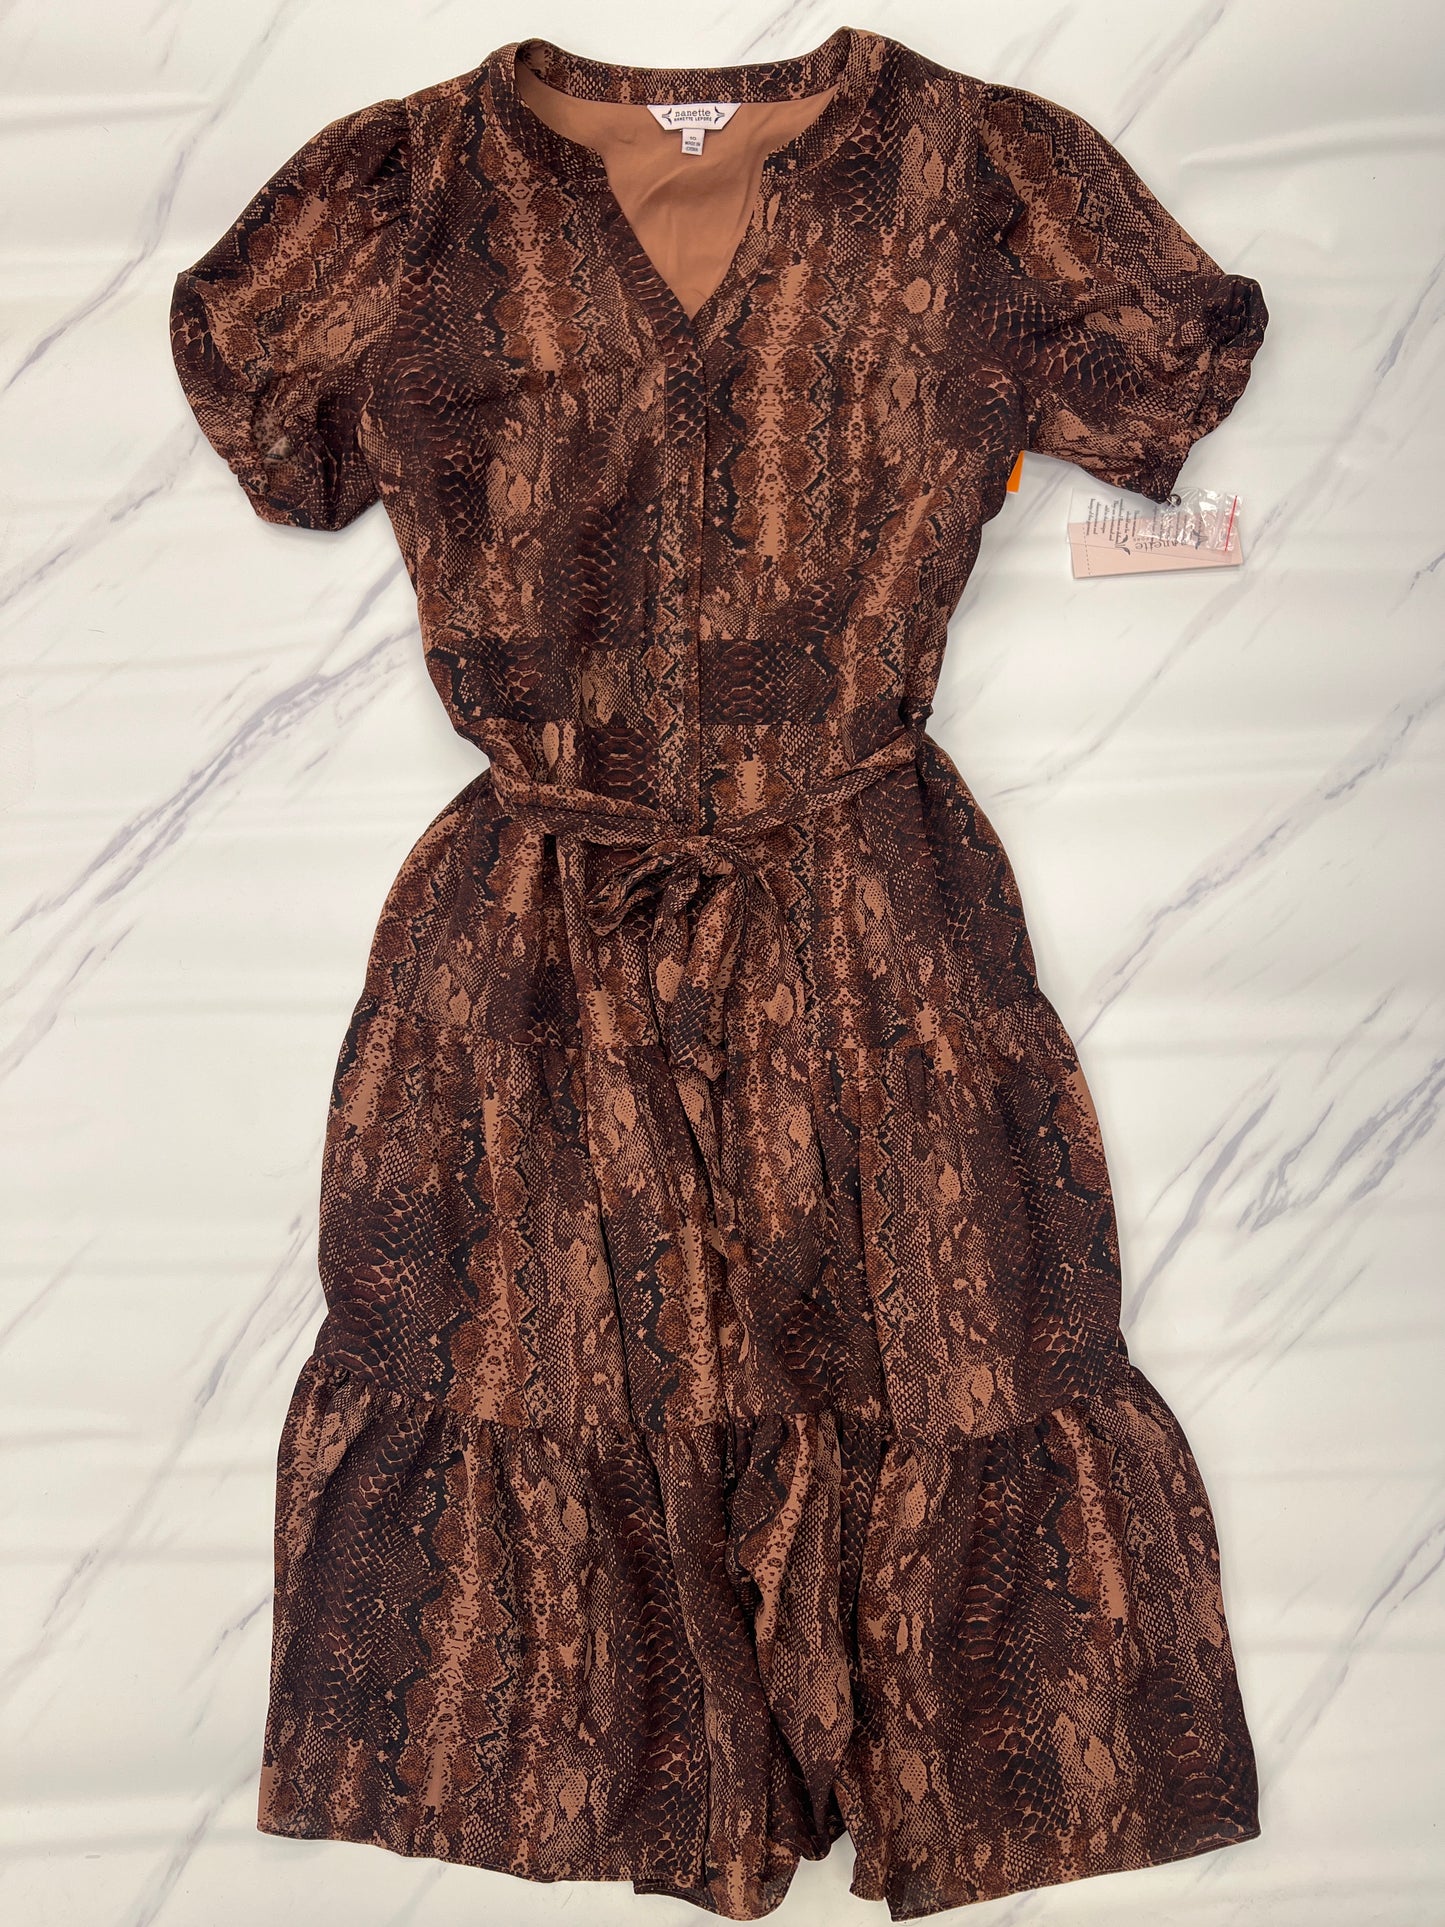 Dress Casual Midi By Nanette By Nanette Lepore  Size: 10